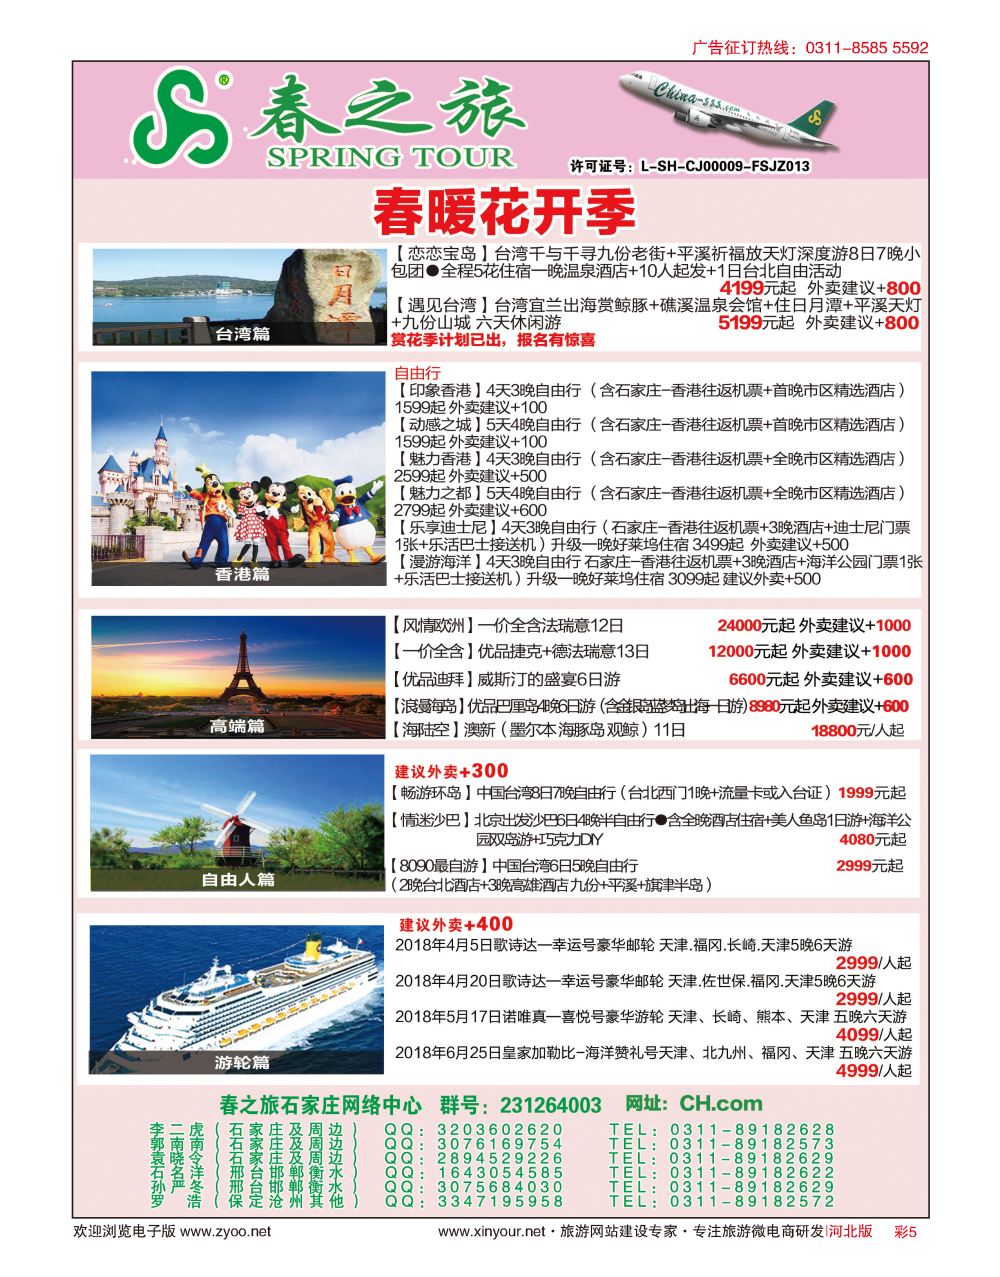 彩5 河北春秋旅游日本·台湾·出境游